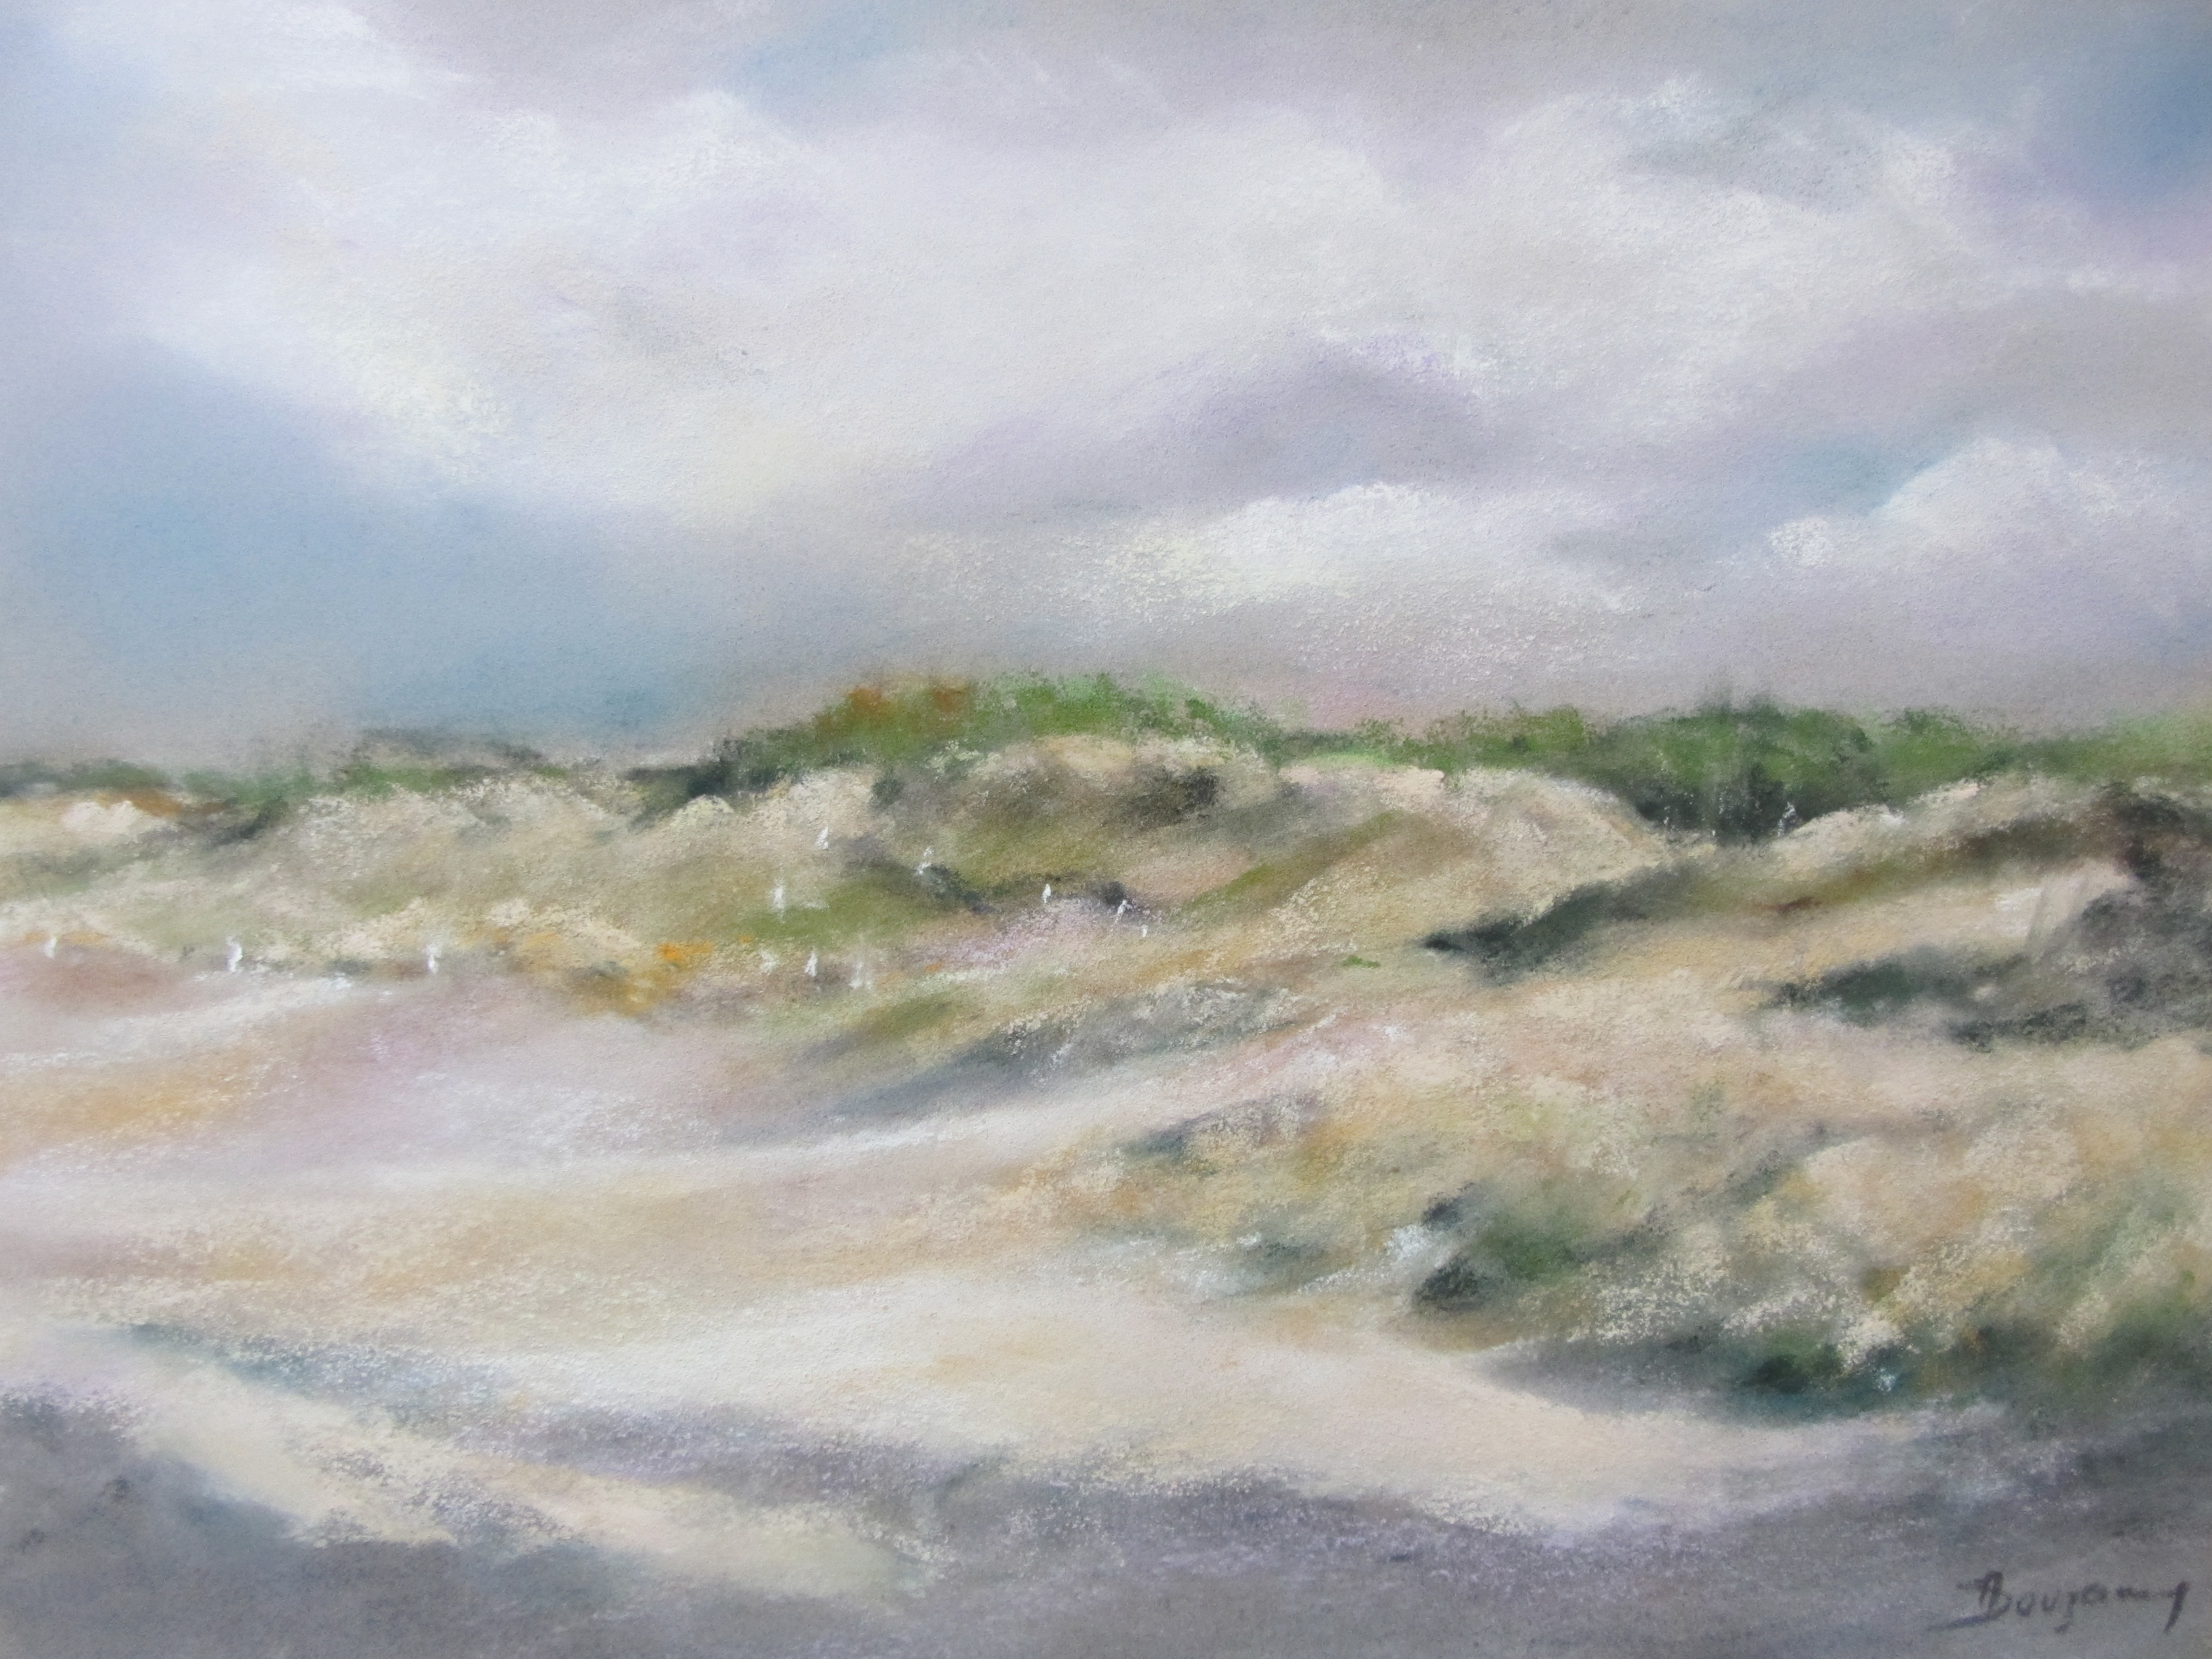 Dune de la plage du Vieux-Bourg - Peinture au pastel sec - 30x40 cm